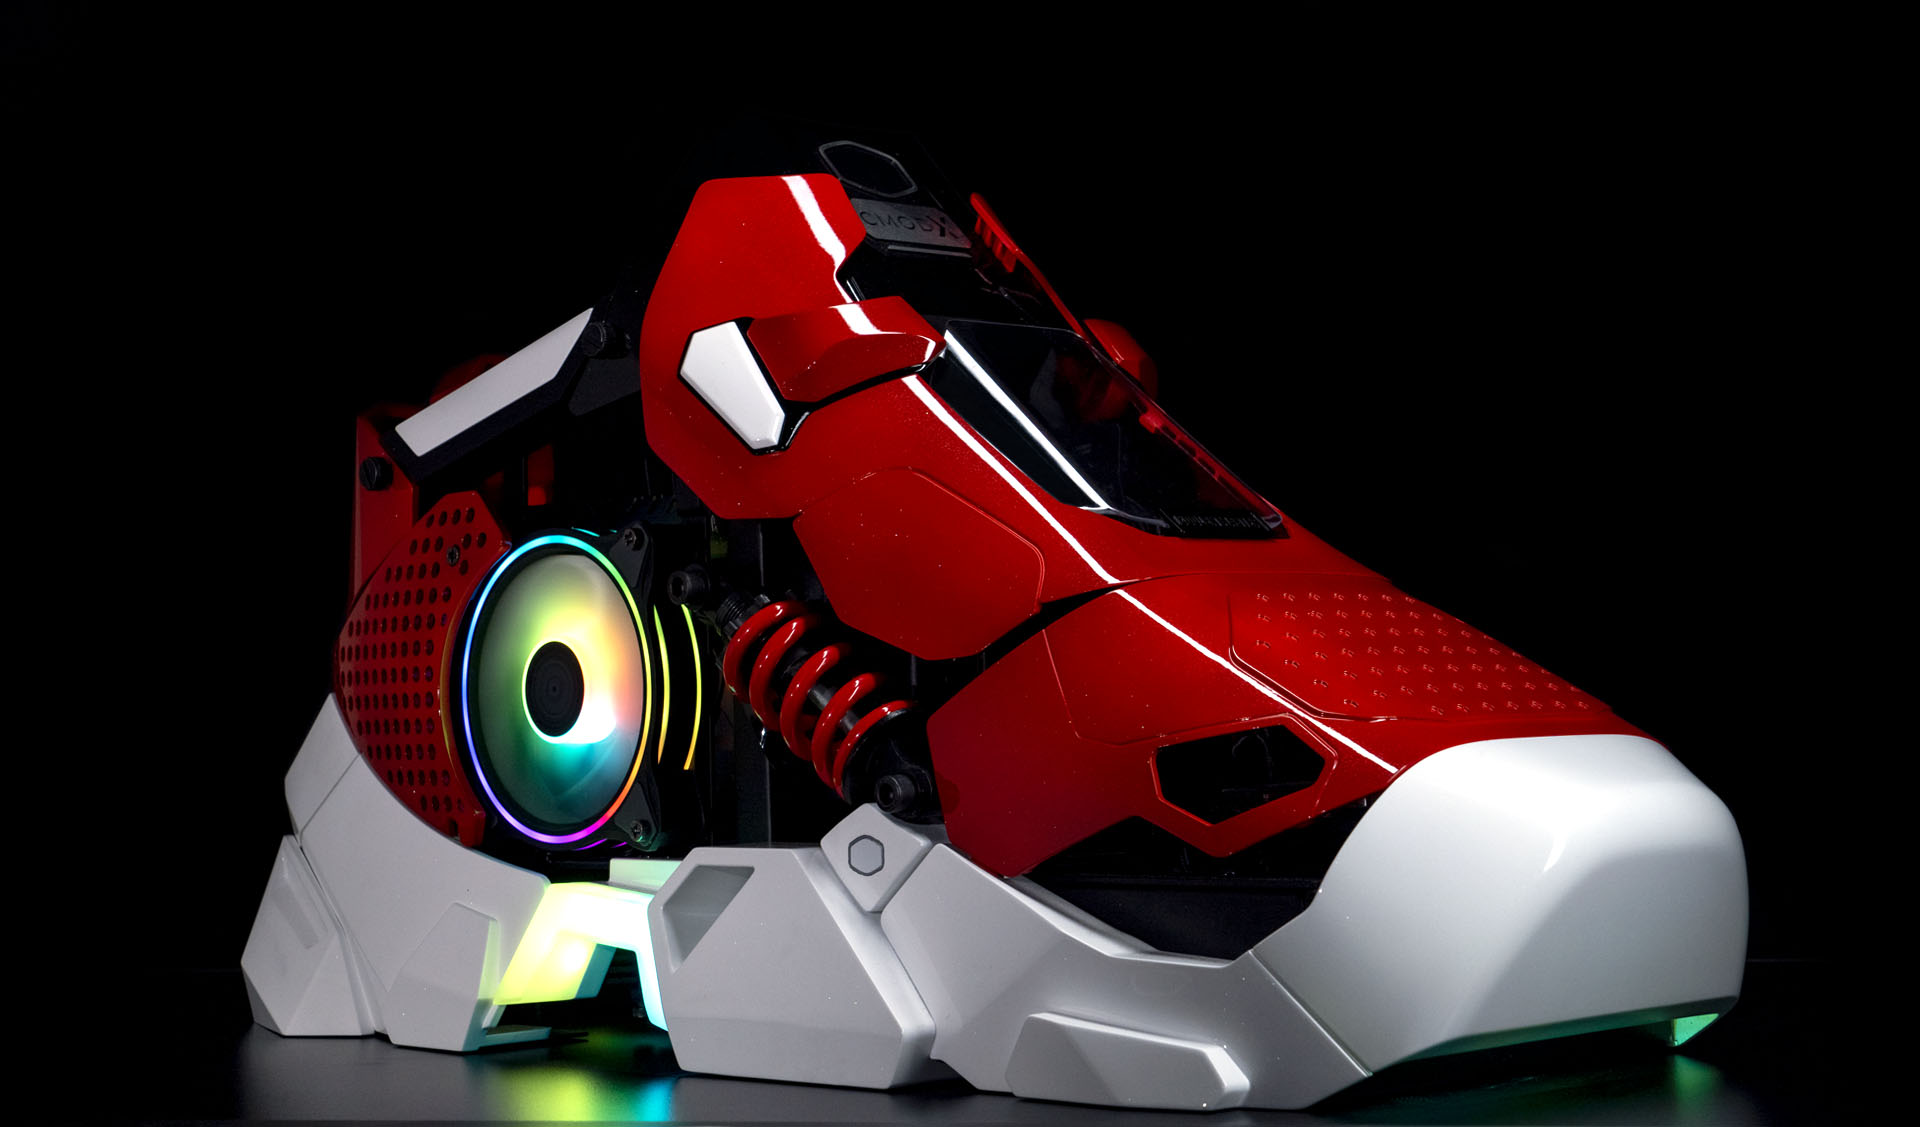 case-sistemas-avanzados-sneaker-x-c-fuente-850w-micro-atx-atx-usb-2-0-usb-3-0-audio-hd